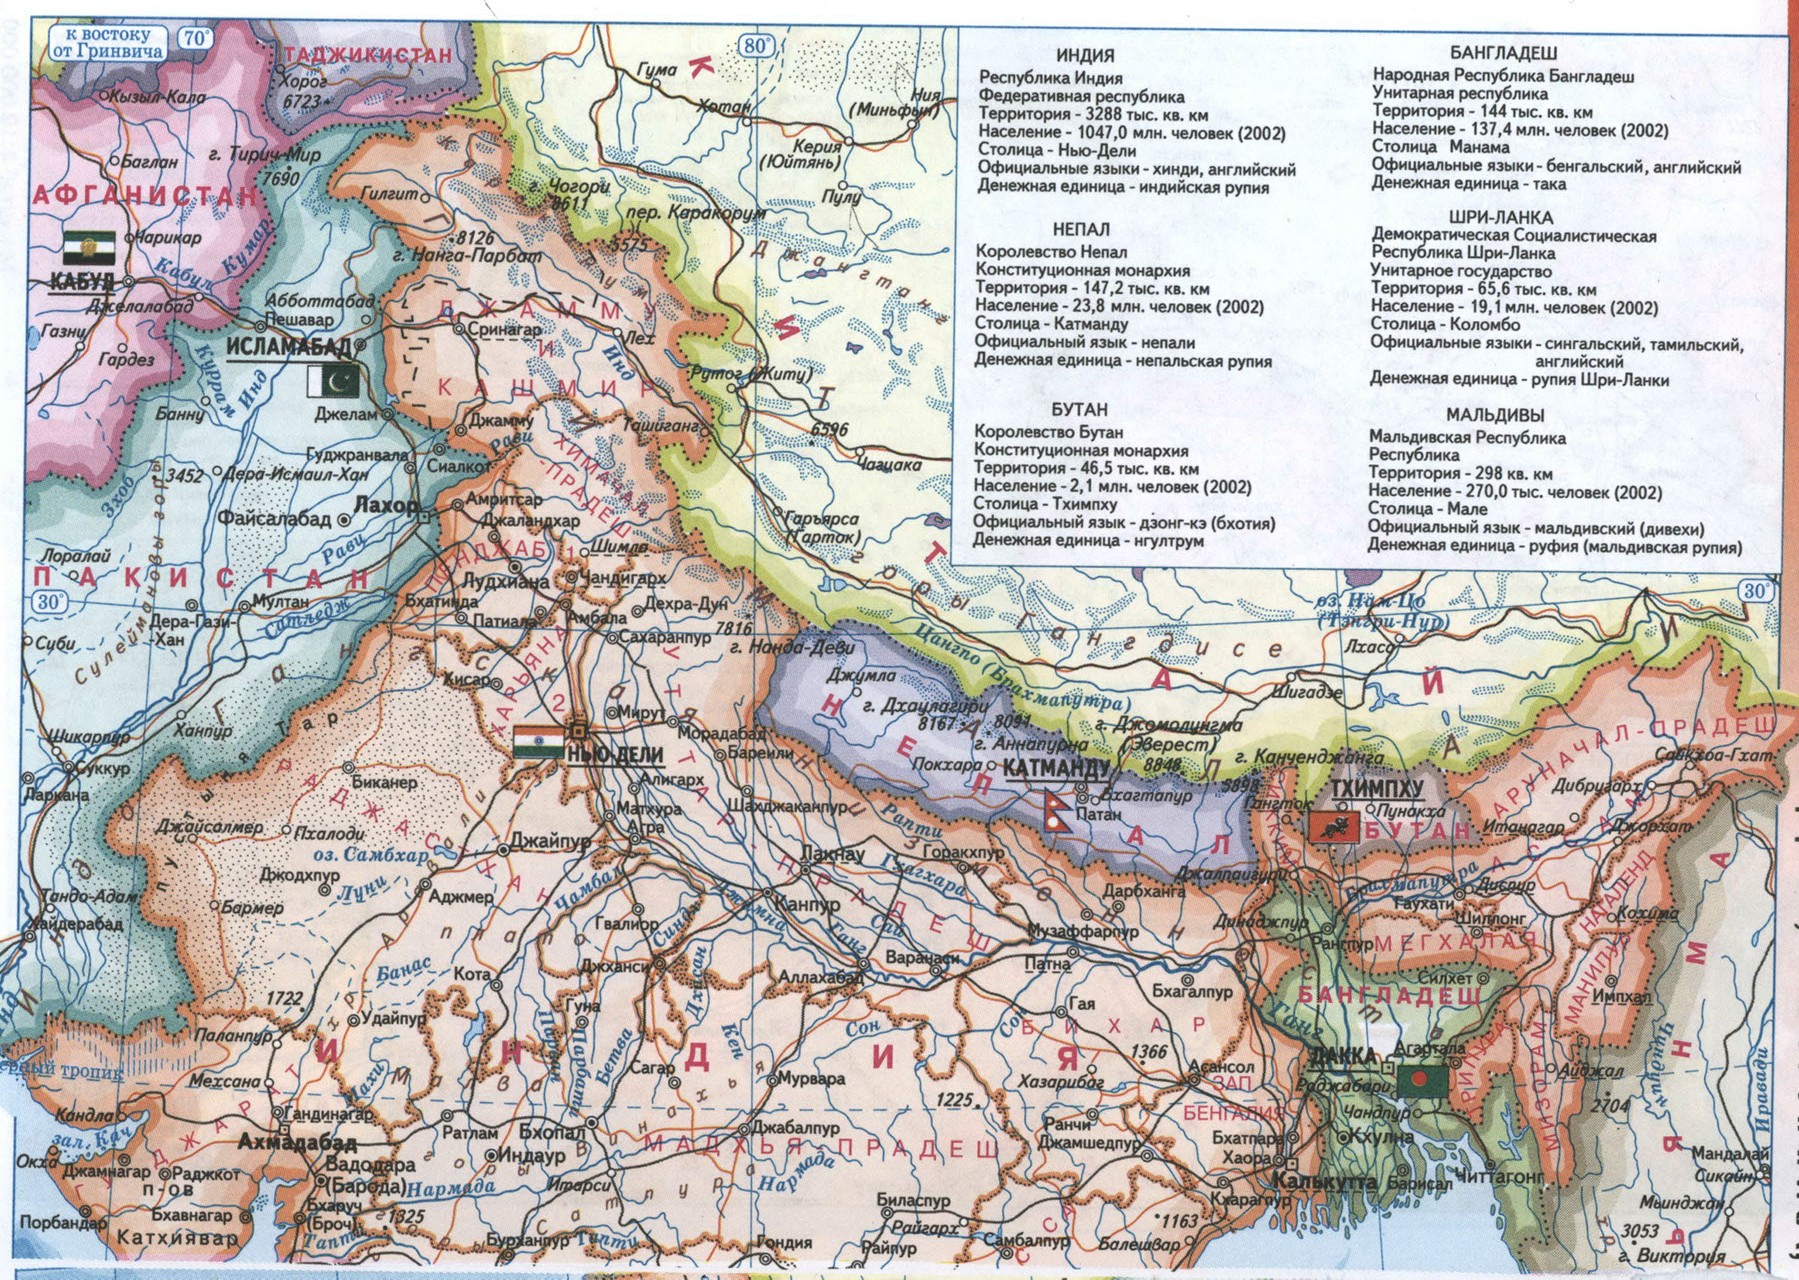 Индия карта на русском языке